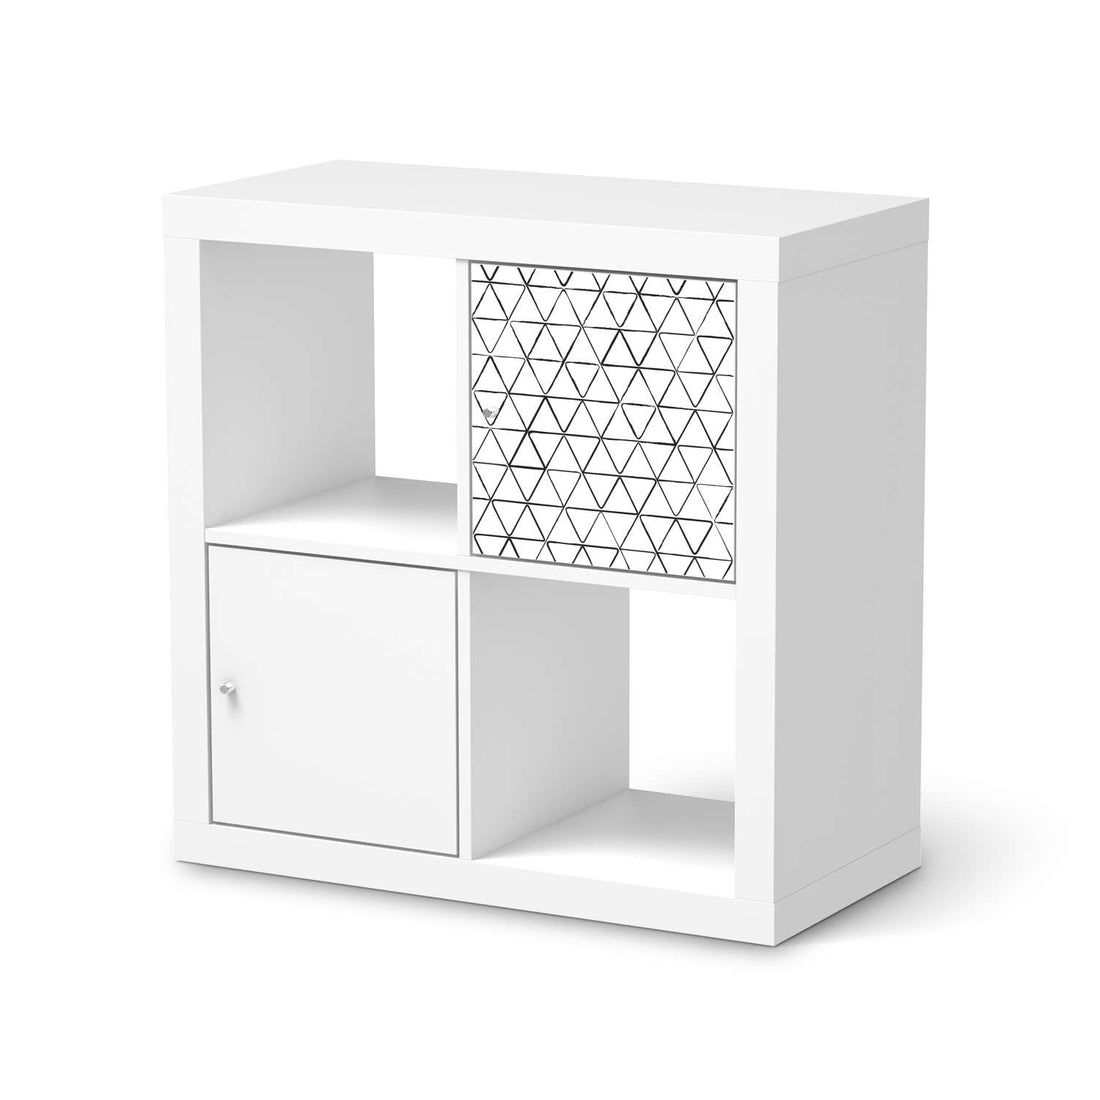 Selbstklebende Folie Mediana - IKEA Kallax Regal 1 Türe  - weiss